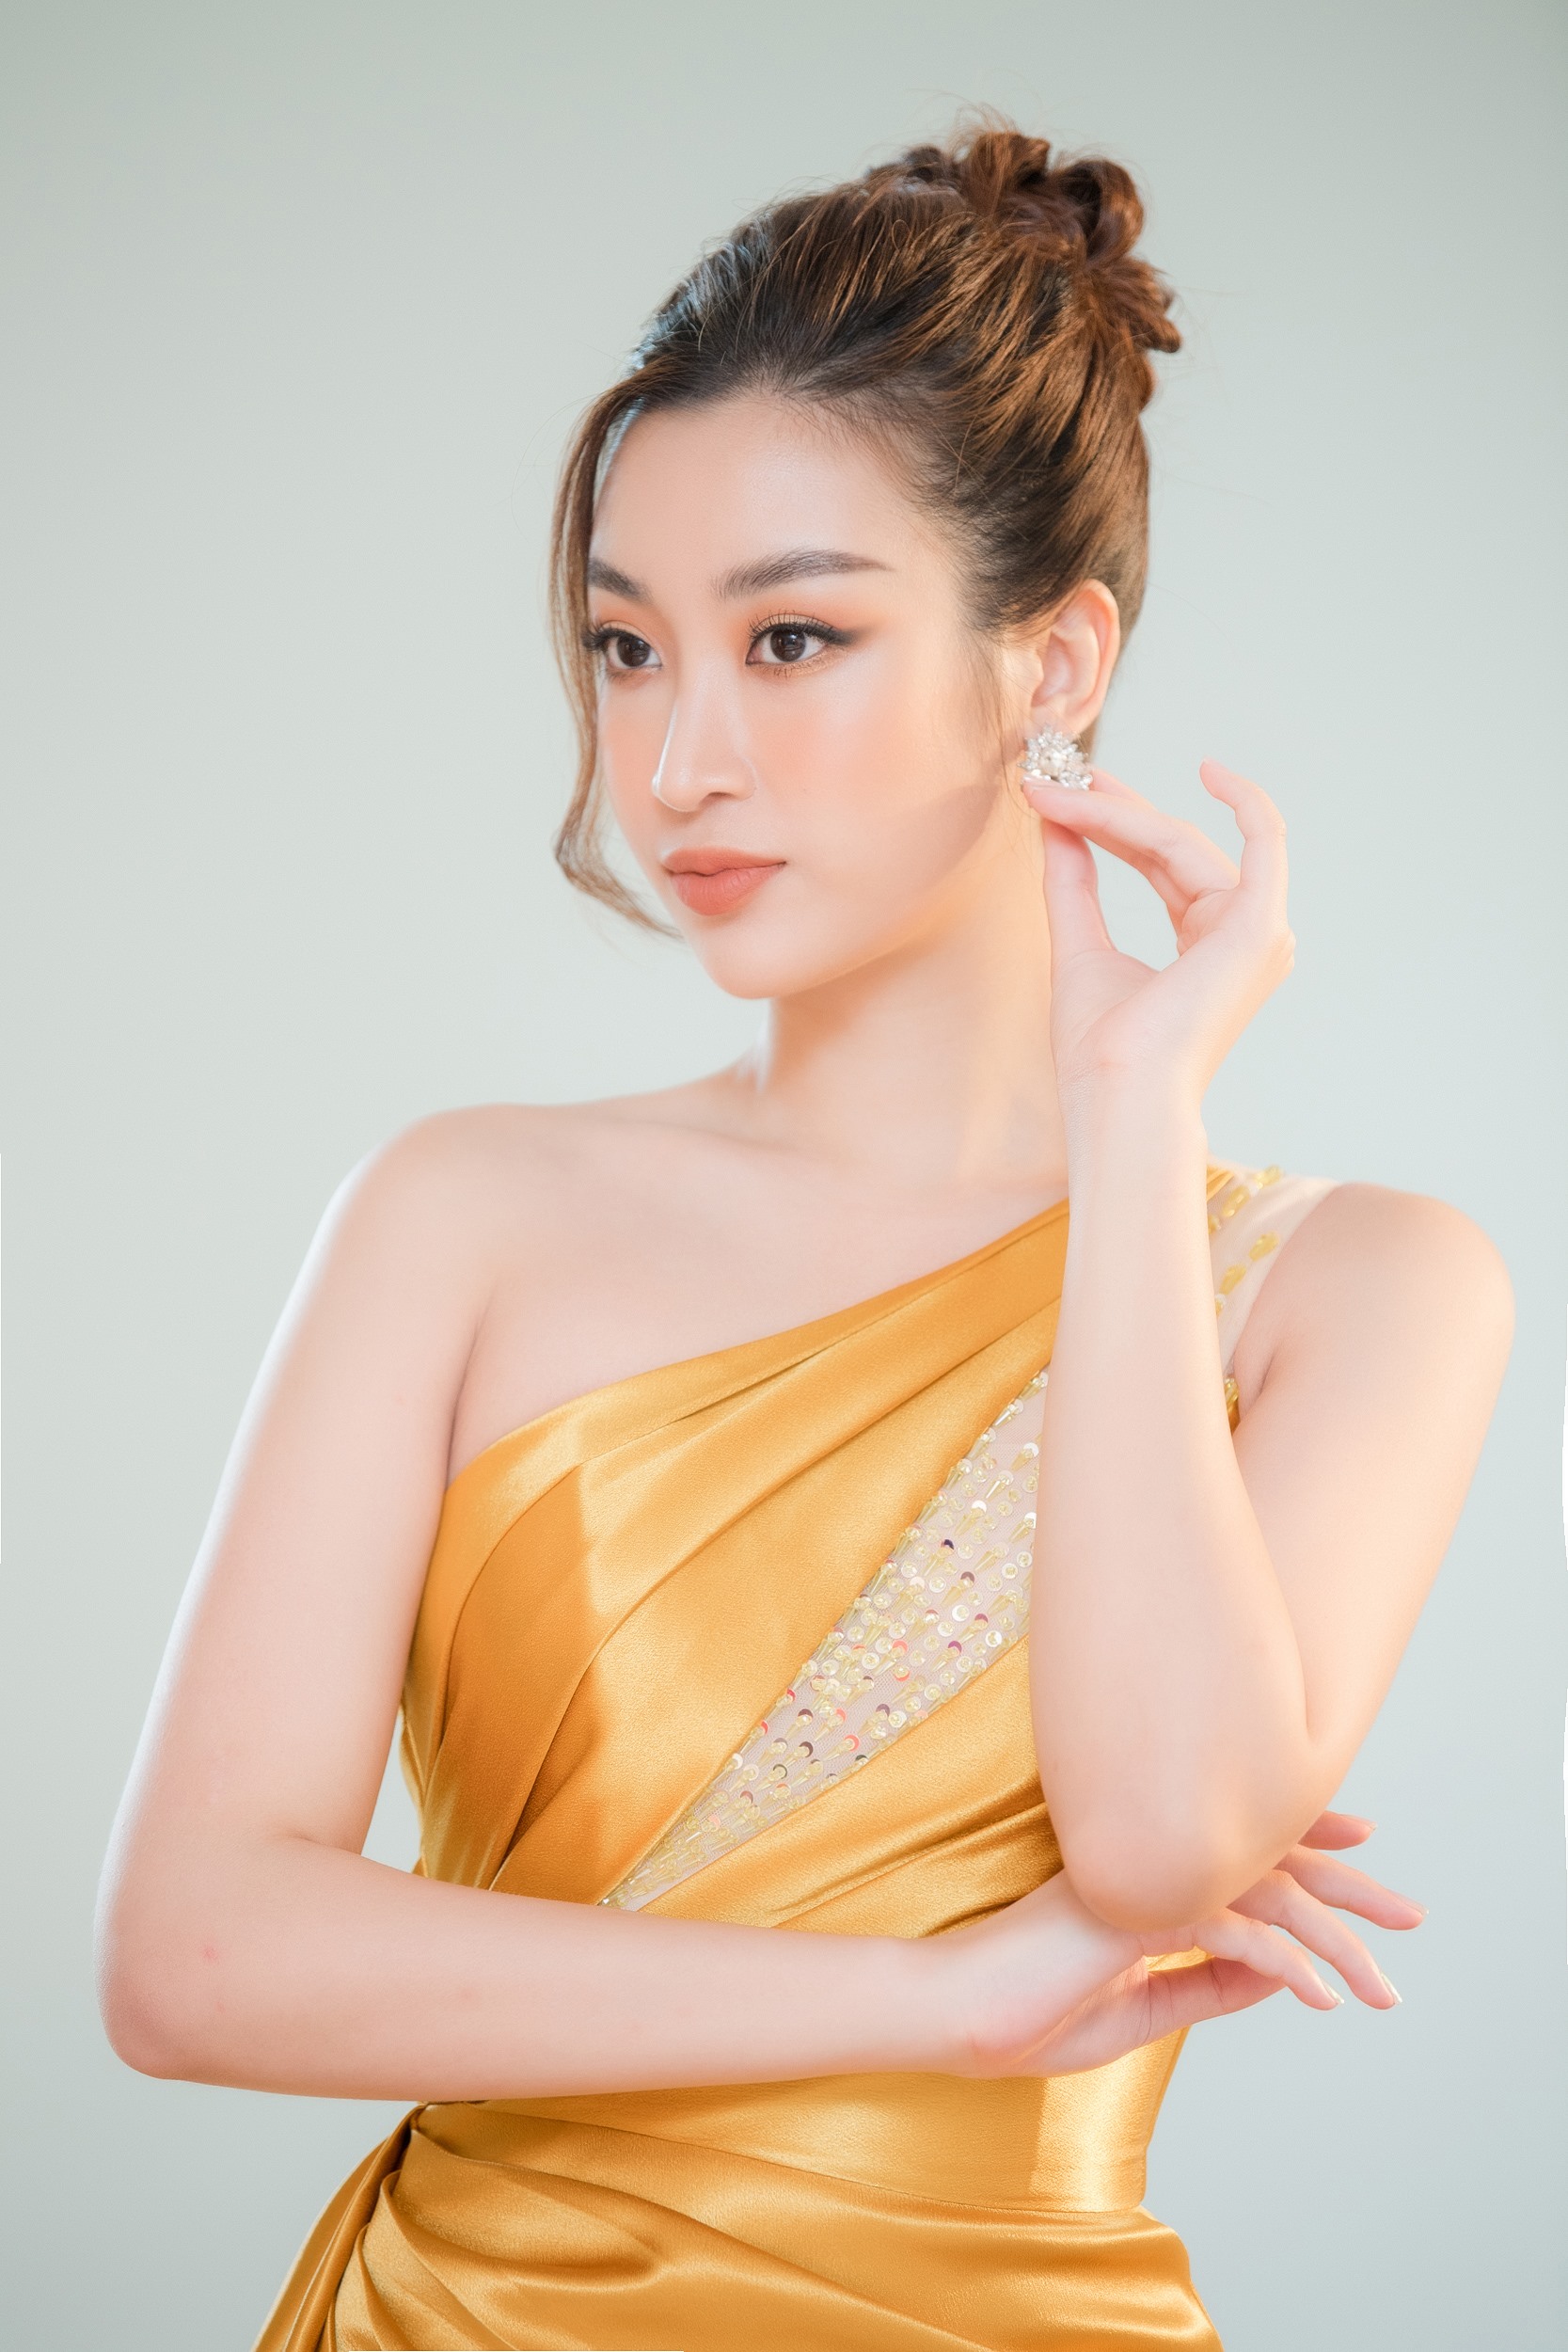 Người đẹp sẽ quay trở lại với Hoa hậu Việt Nam 2020 trong vai trò host của phần thi Người đẹp nhân ái và Head to Head Challenge.  Xinh đẹp và tài năng, Mỹ Linh sẽ trở thành hình mẫu truyền cảm hứng cho các cô gái trẻ đến gần hơn với vương miện Hoa hậu.